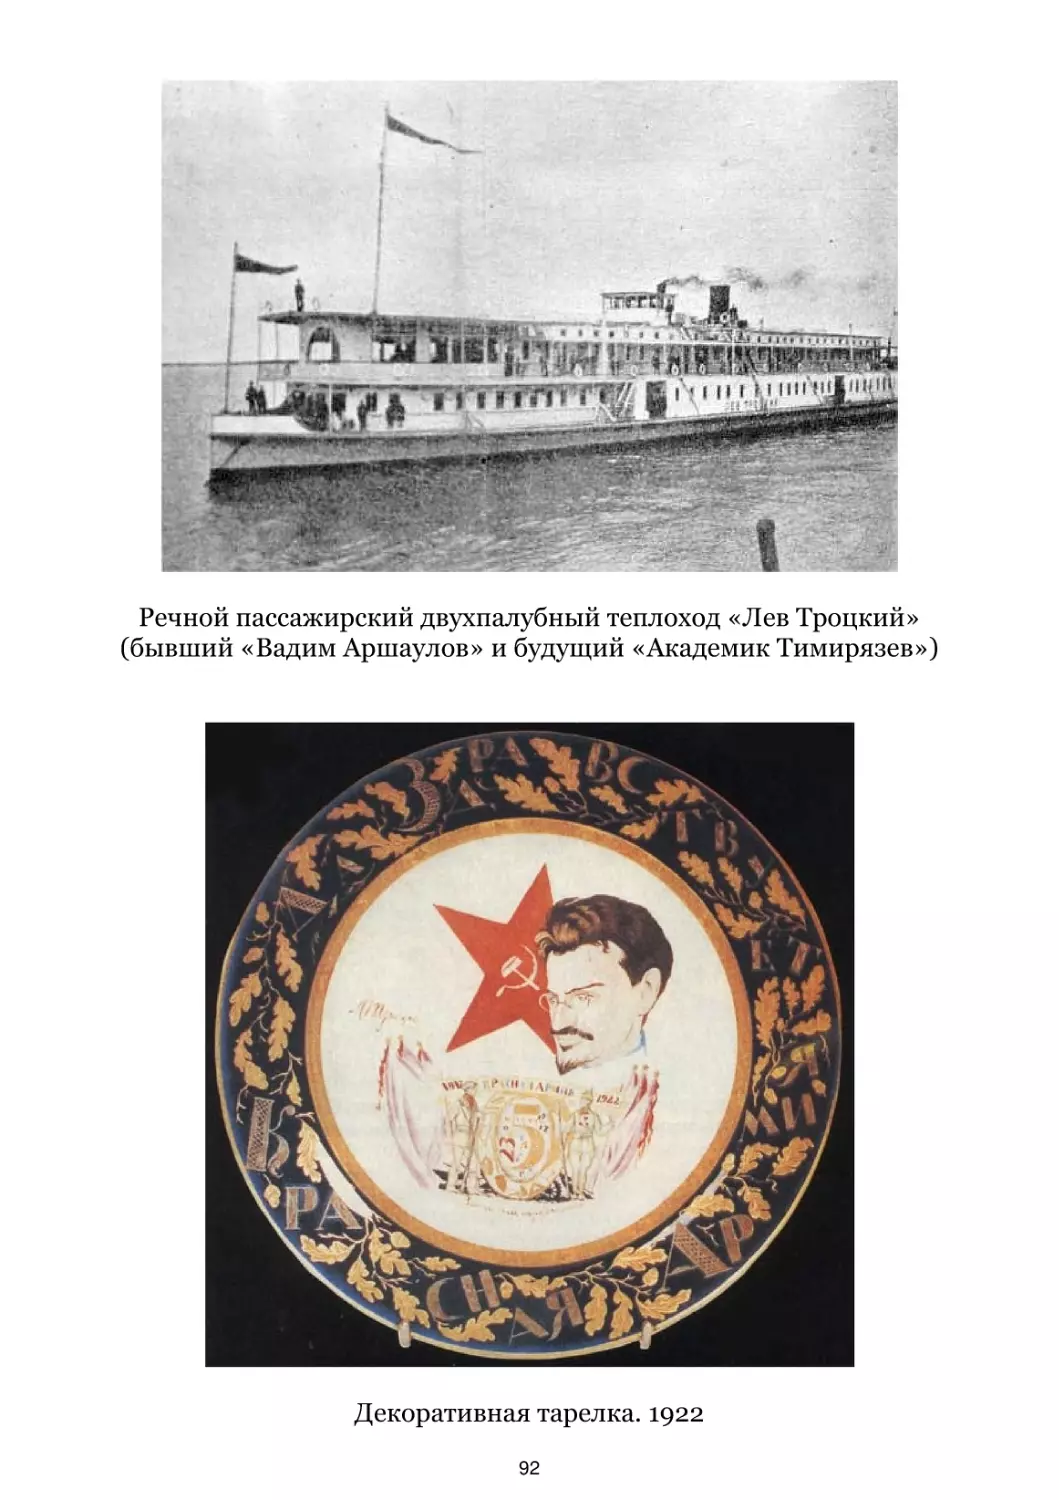 Речной пассажирский двухпалубный теплоход «Лев Троцкий»
Декоративная тарелка. 1922